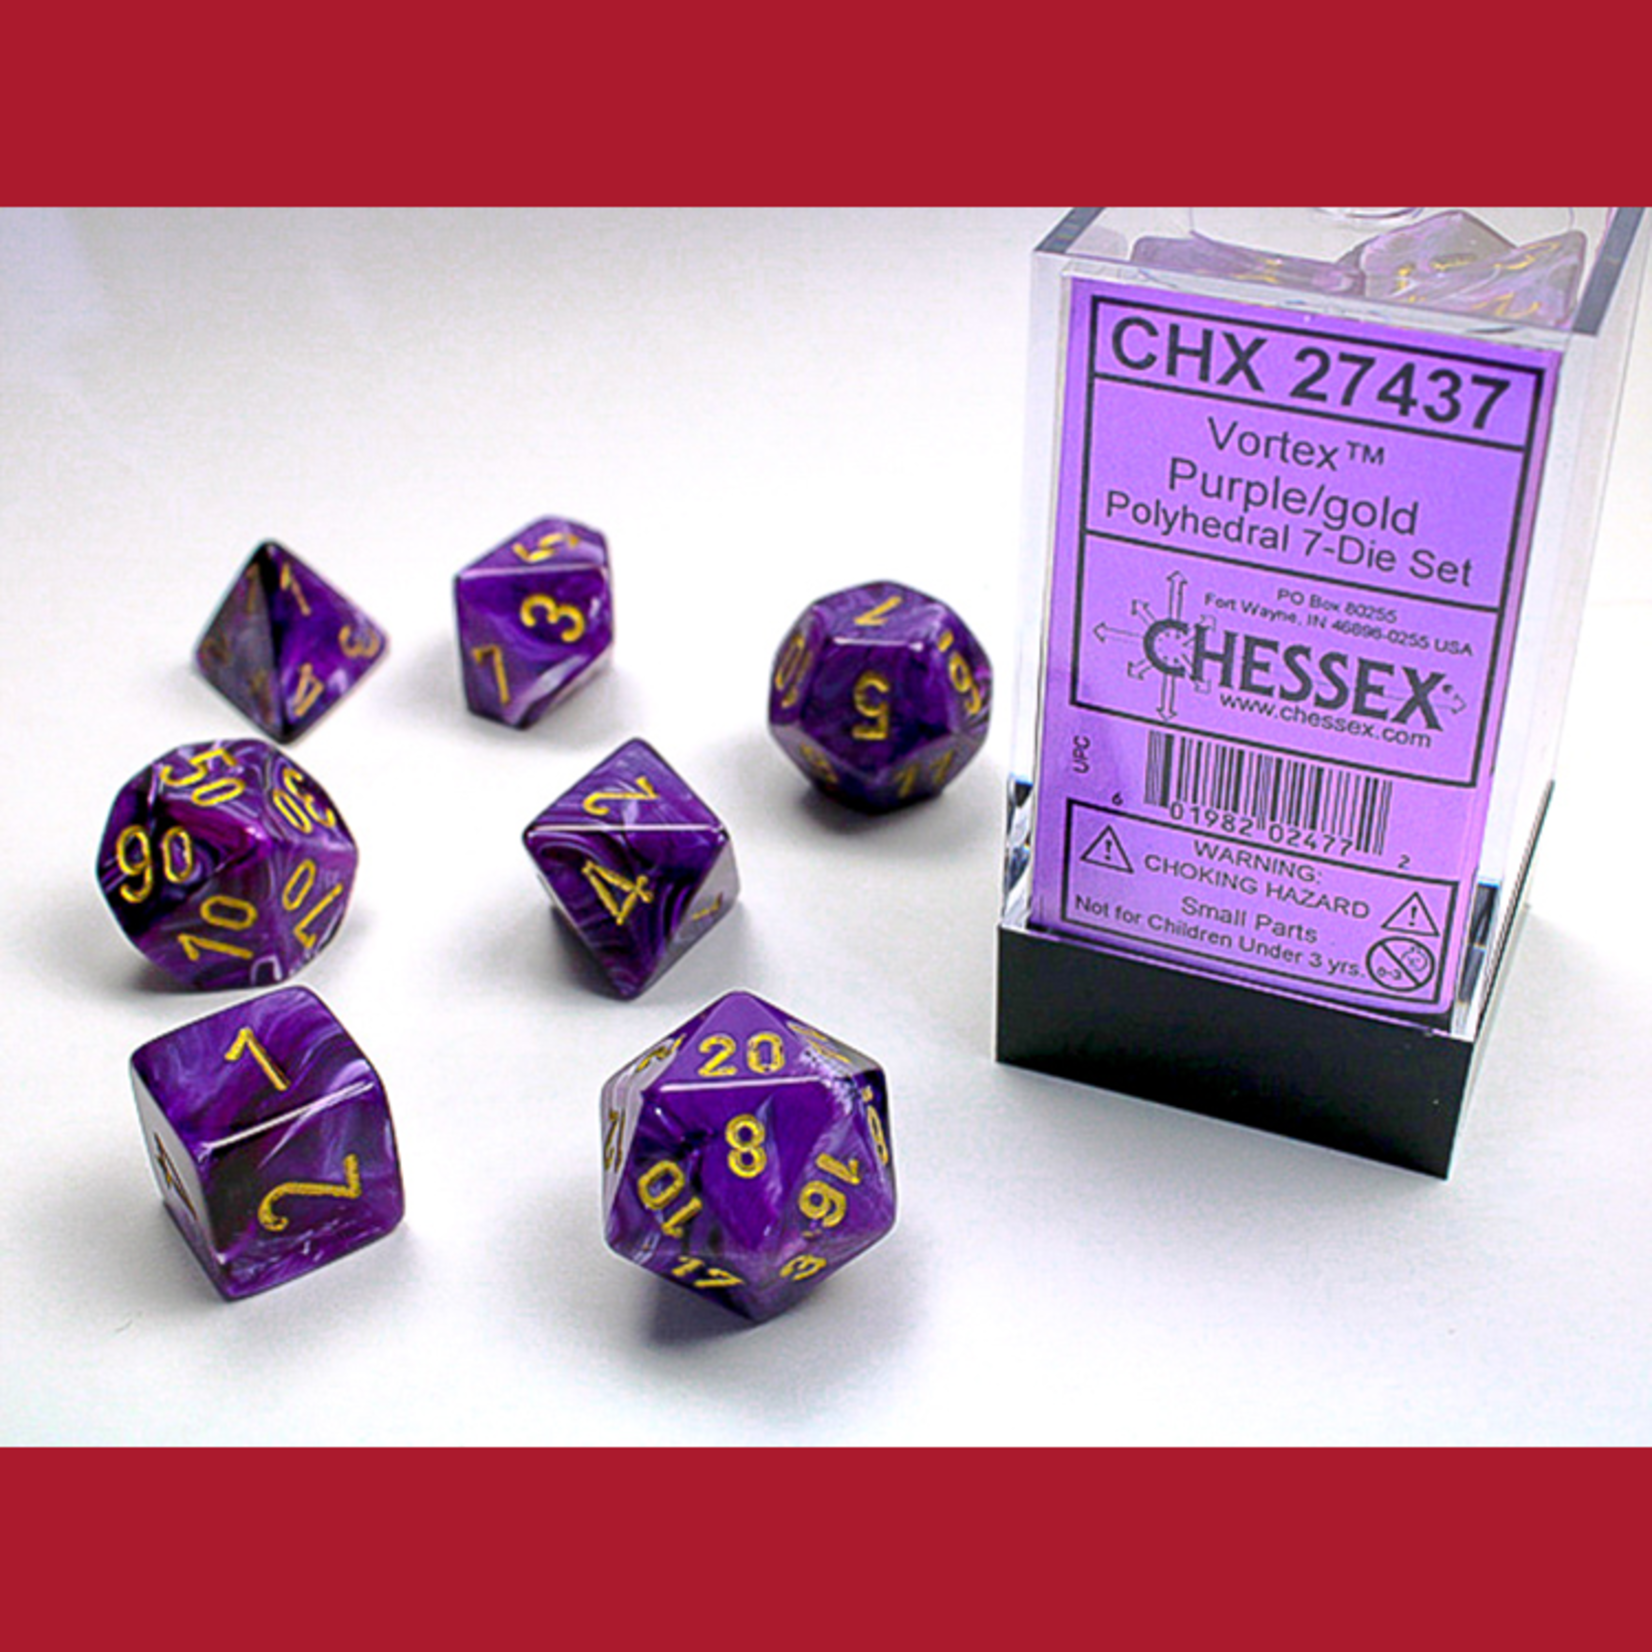 Chessex CHX 27437 Vortex Purple / Gold Polyhedral 7-die Set